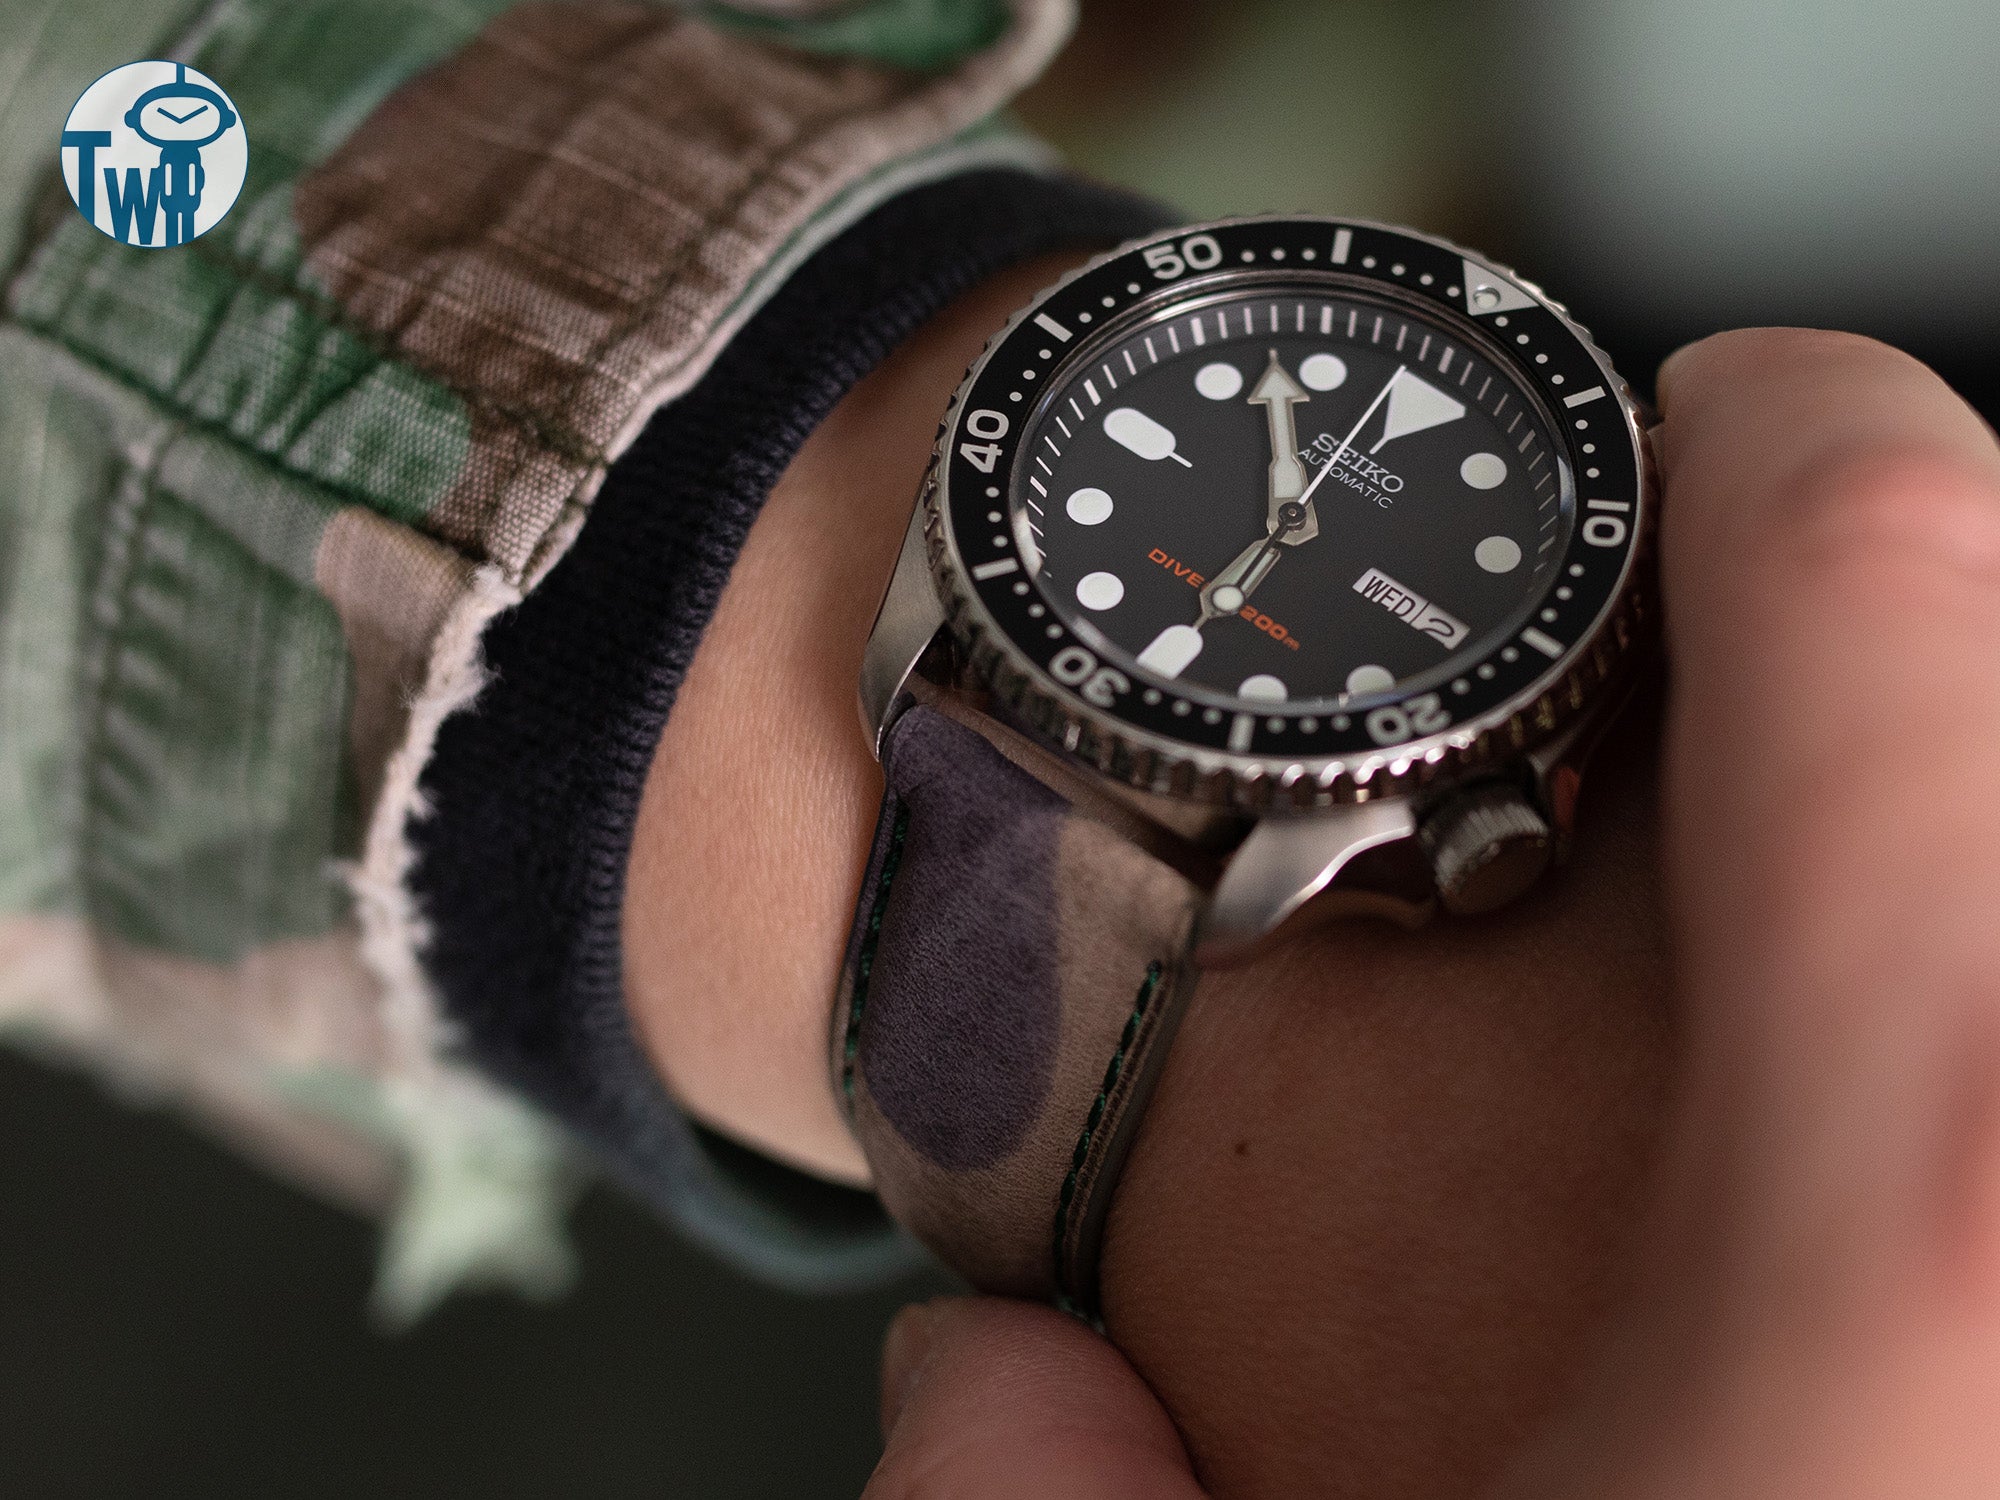 Seiko精工 SKX007 潛水錶 搭配 太空人腕時計TW的迷彩皮革錶帶。